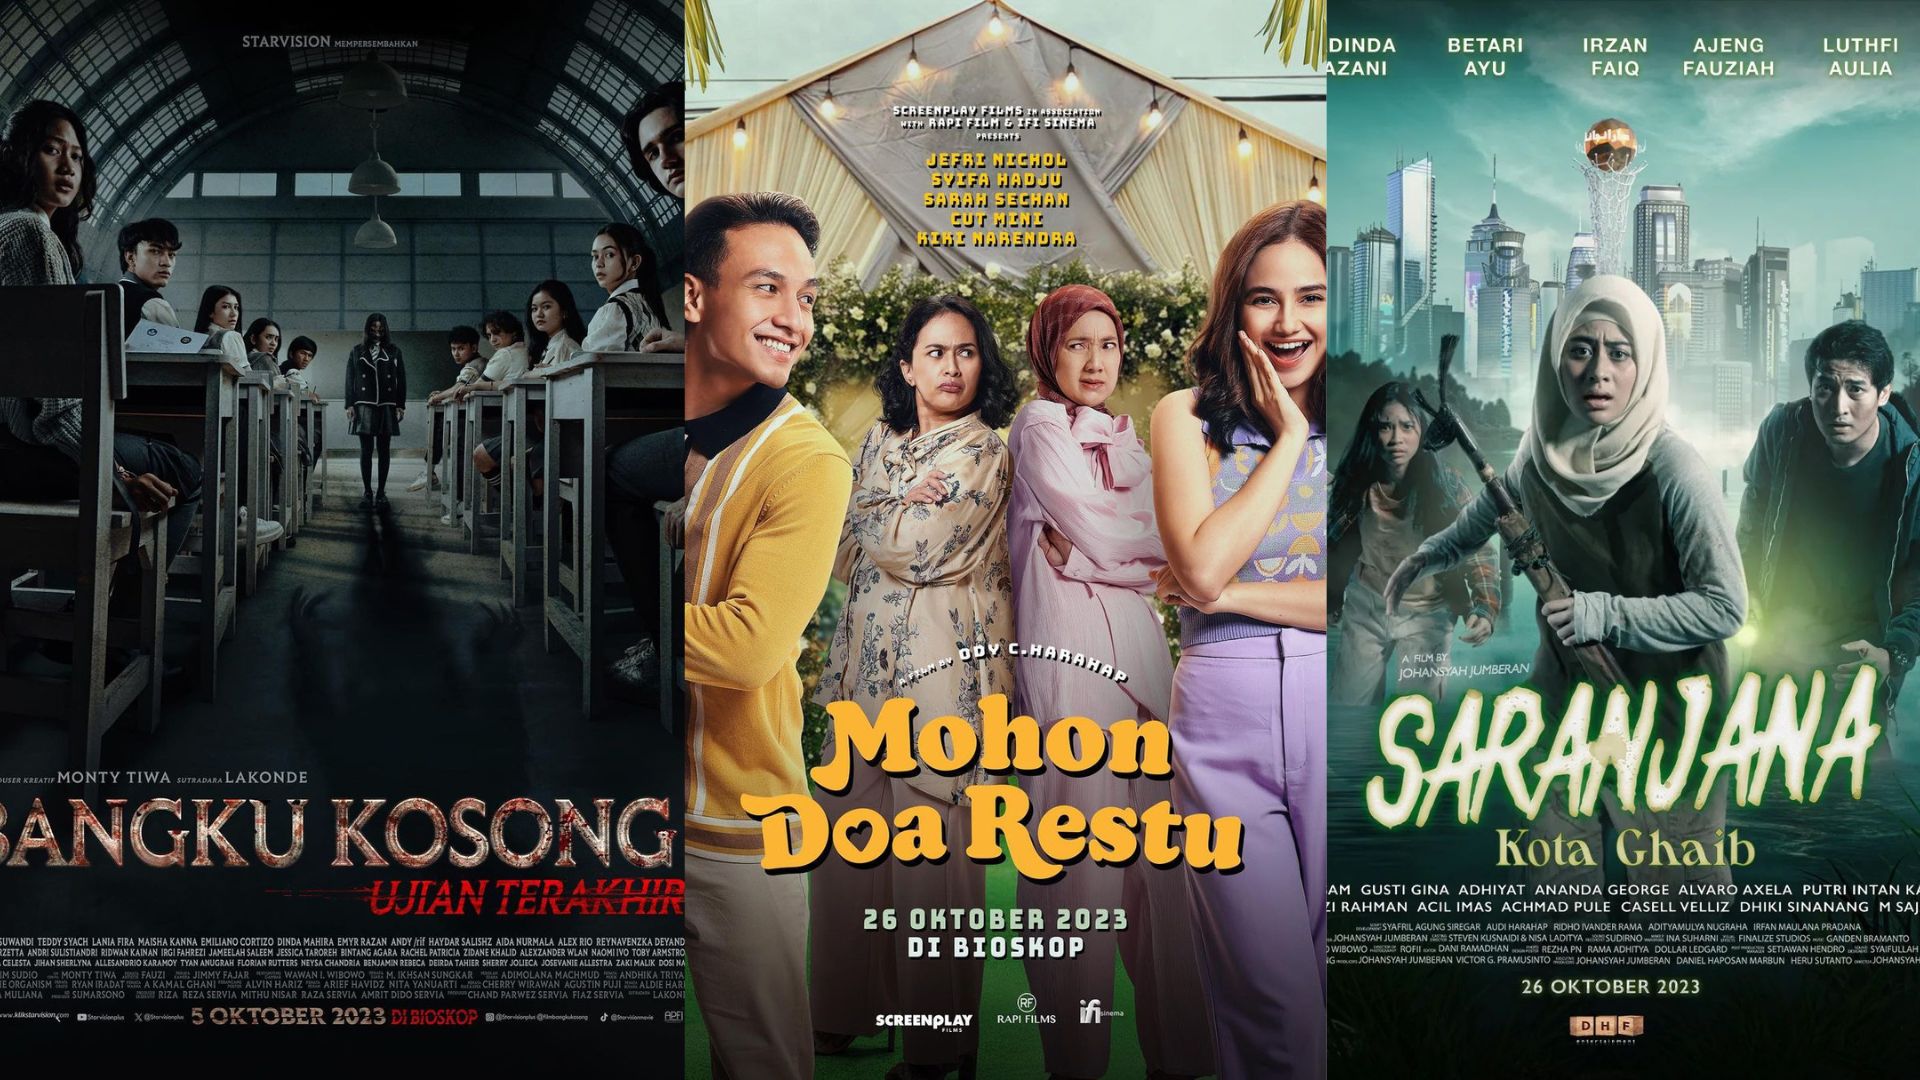 Hypeabis 11 Film Indonesia Tayang Di Bioskop Oktober 2023 Genre Horor Dominan 7863